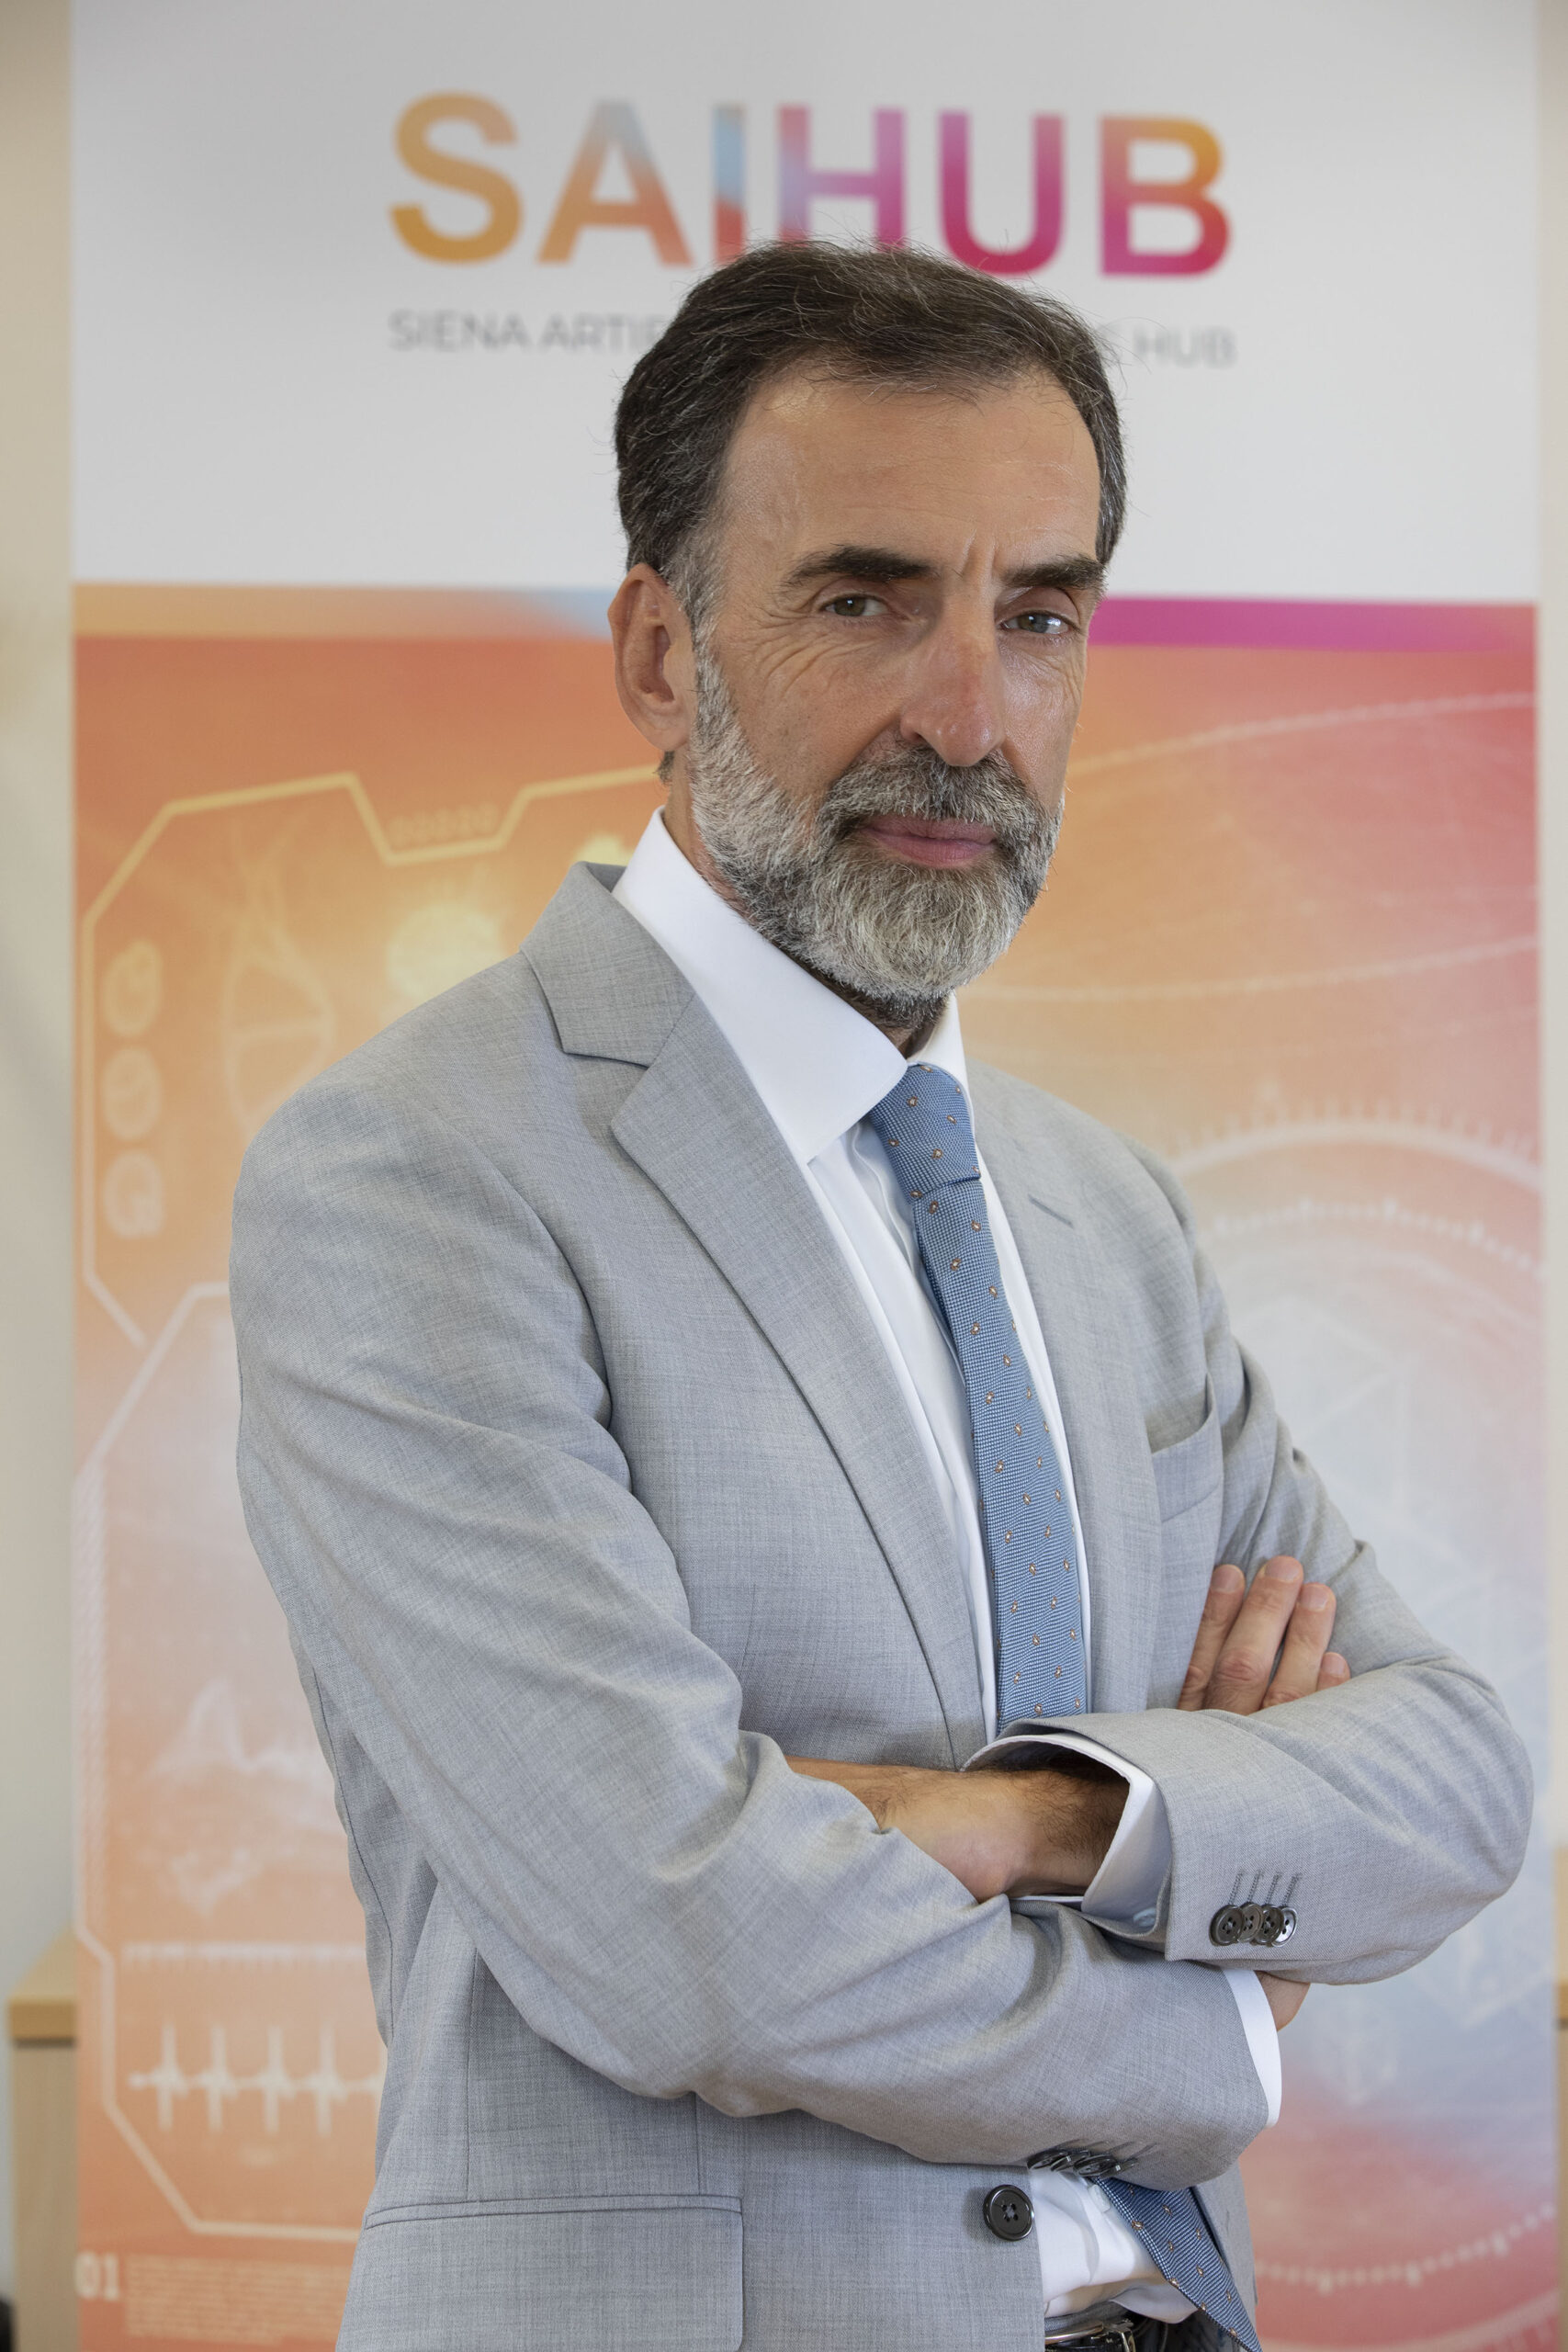 Valter Fraccaro è Presidente di SAIHub, acronimo di Siena Artificial Intelligence Hub, polo di rilievo mondiale nel campo delle Life Sciences